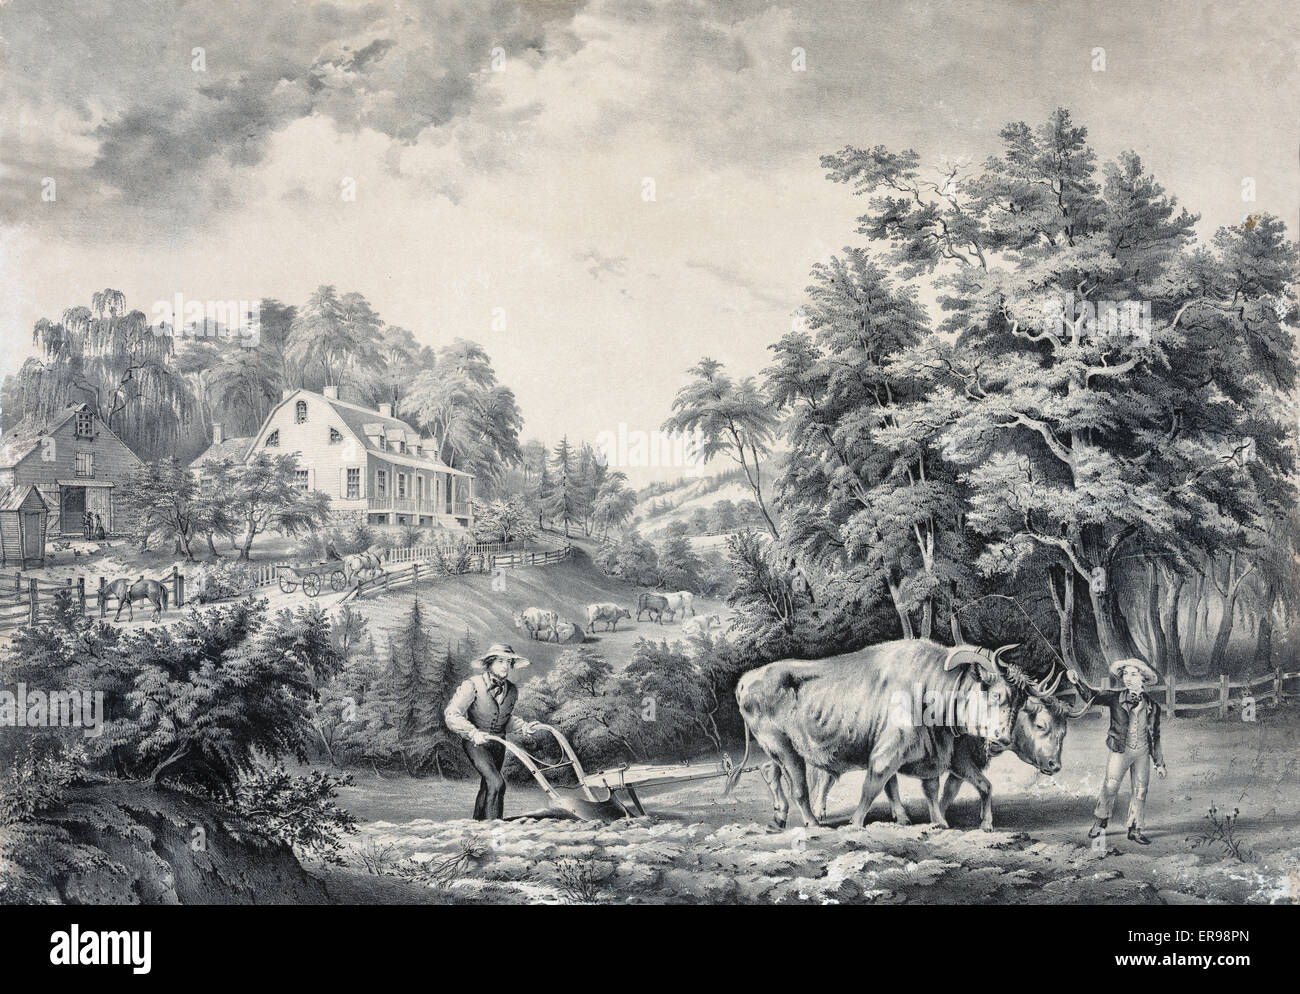 American farm scenes: No. 1. Date 1853. Stock Photo